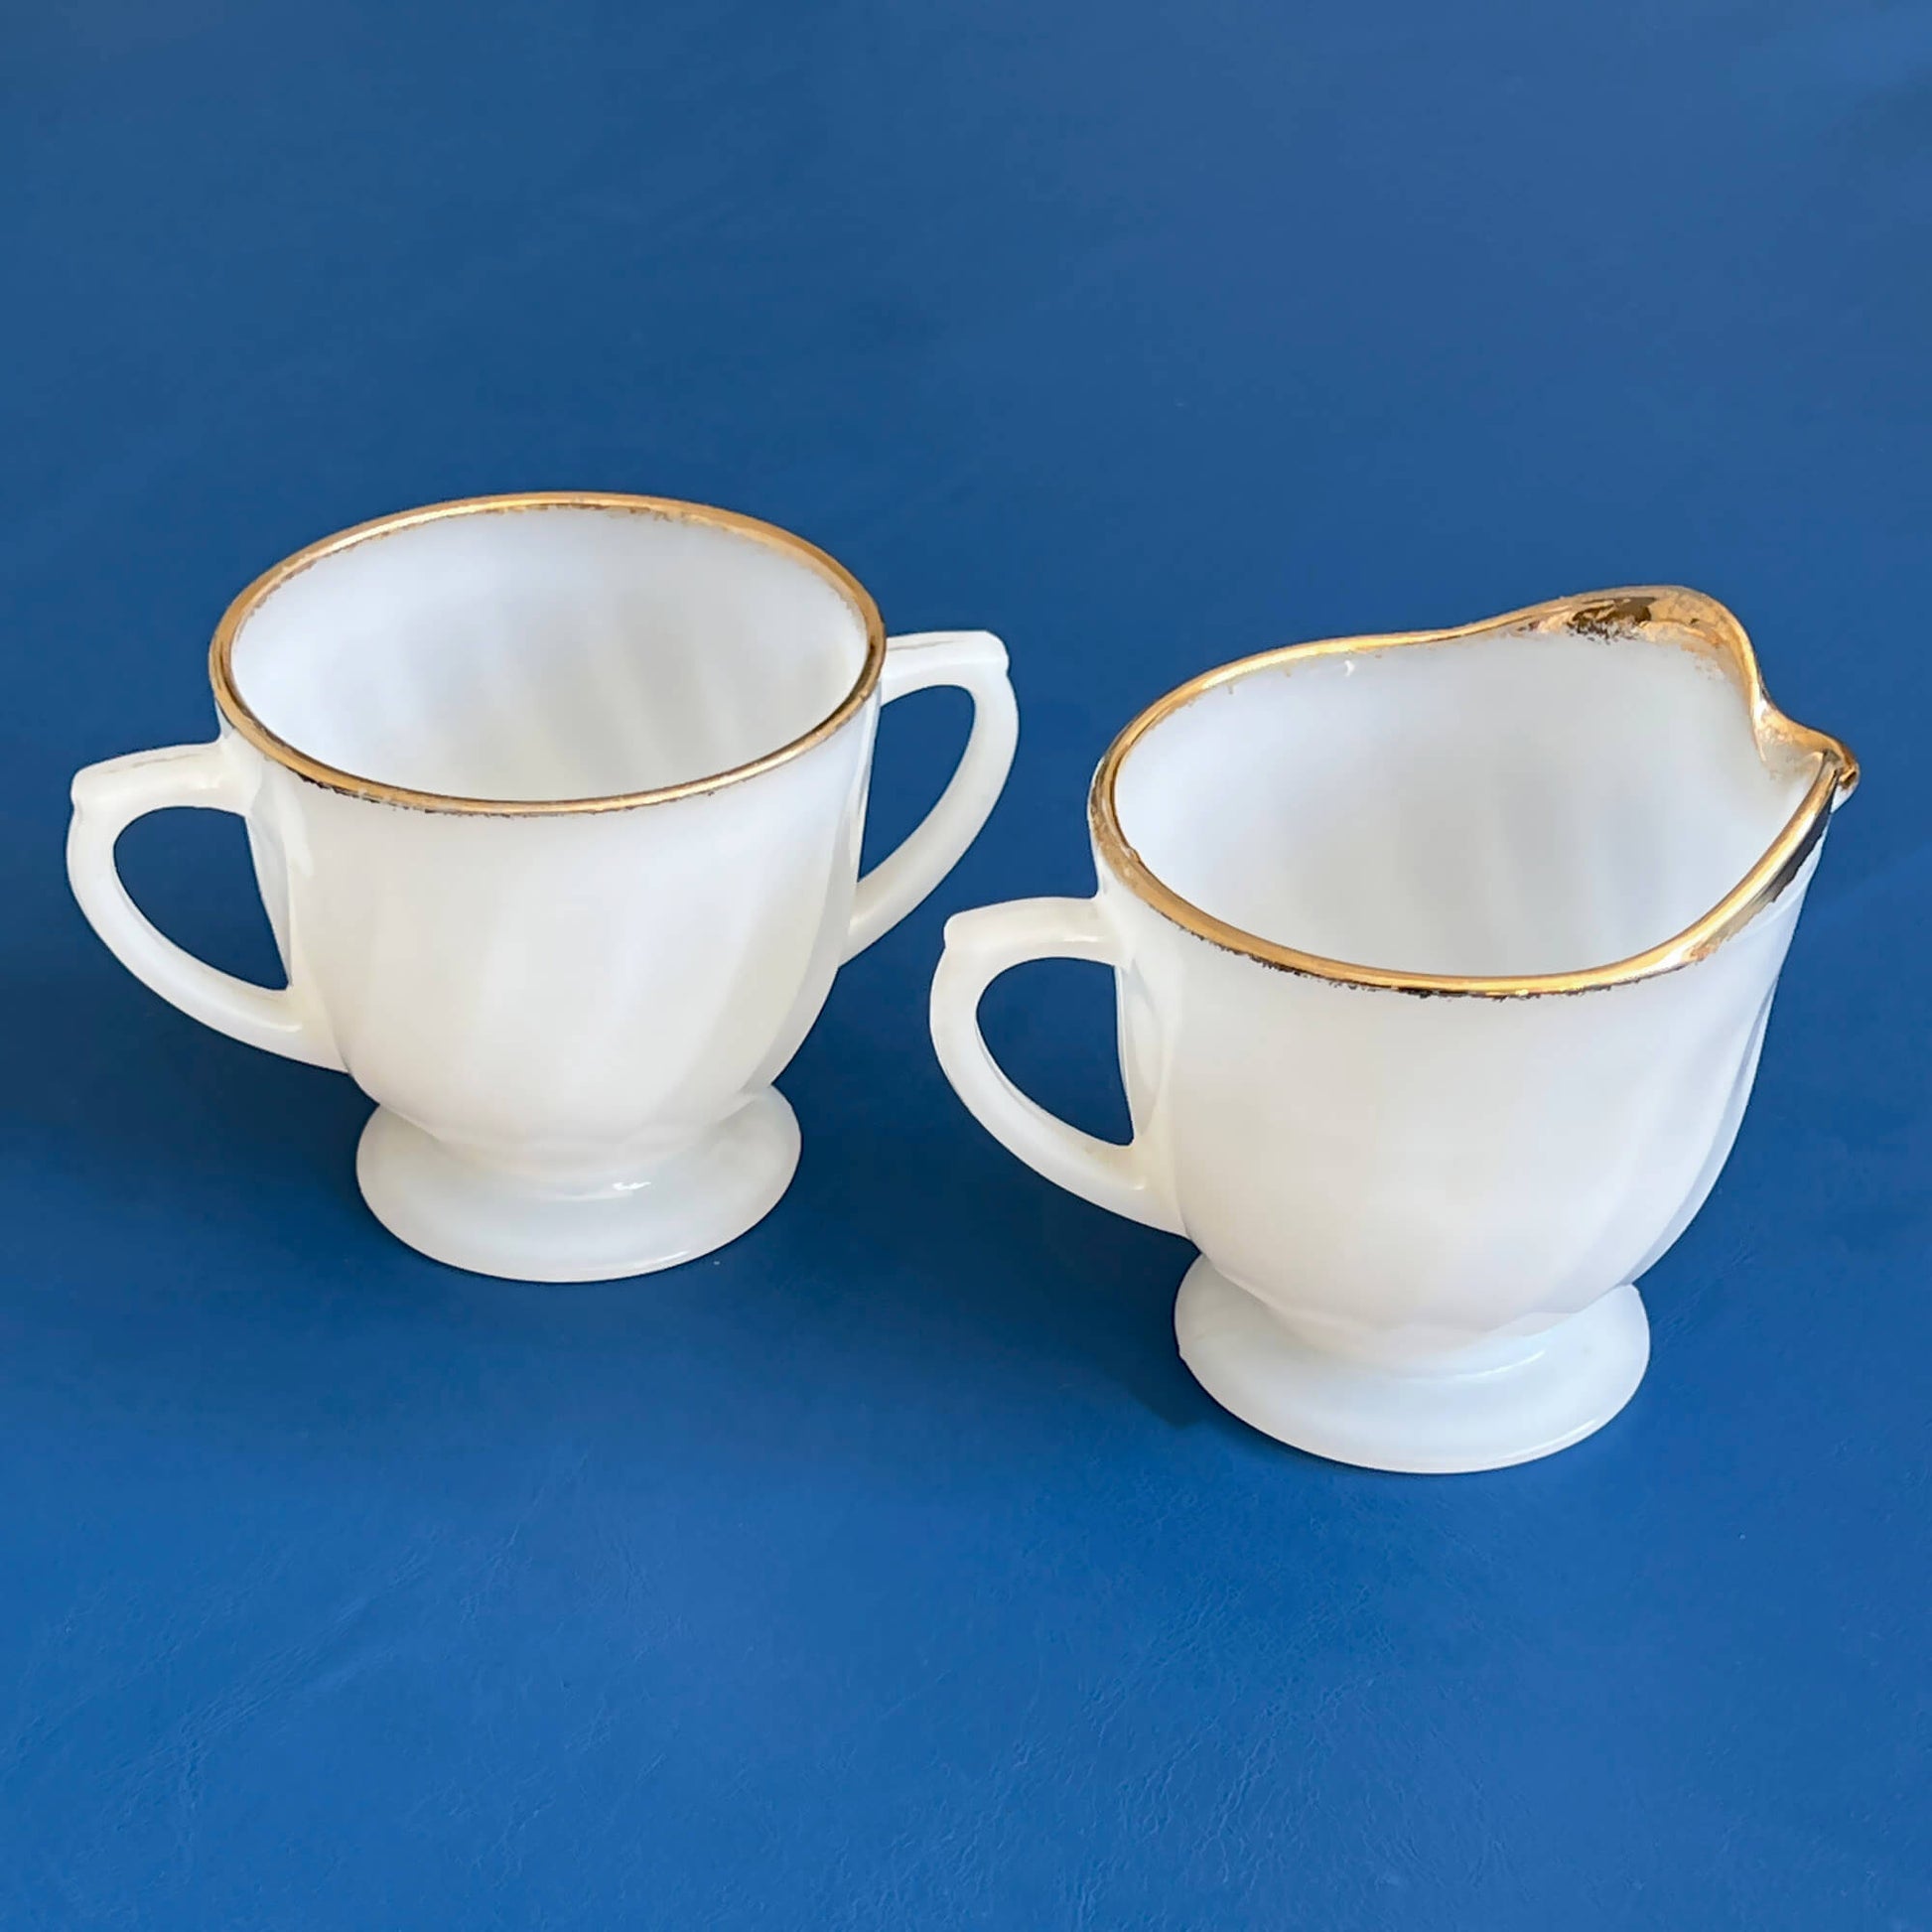 Fire-King-Milk-Glass-Creamer-and-Sugar-Bowl-Set.-Shop-eBargainsAndDeals.com